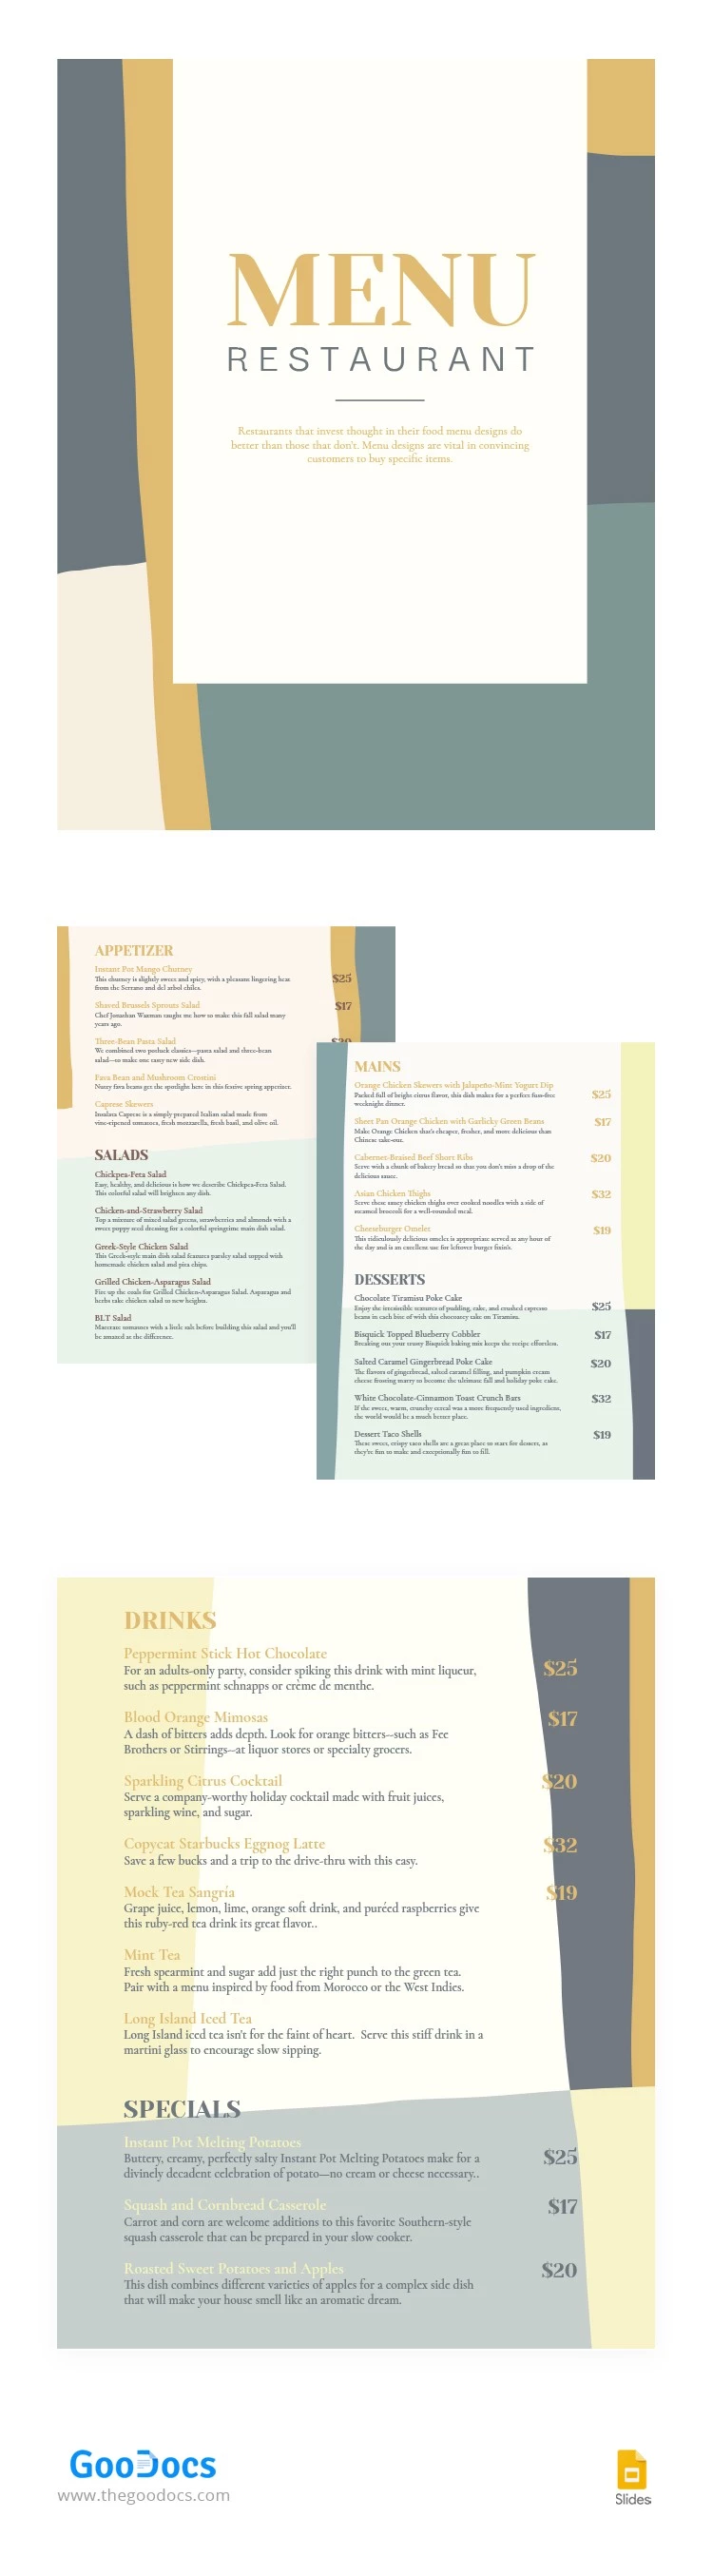 Menu de restaurant attractif - free Google Docs Template - 10063868